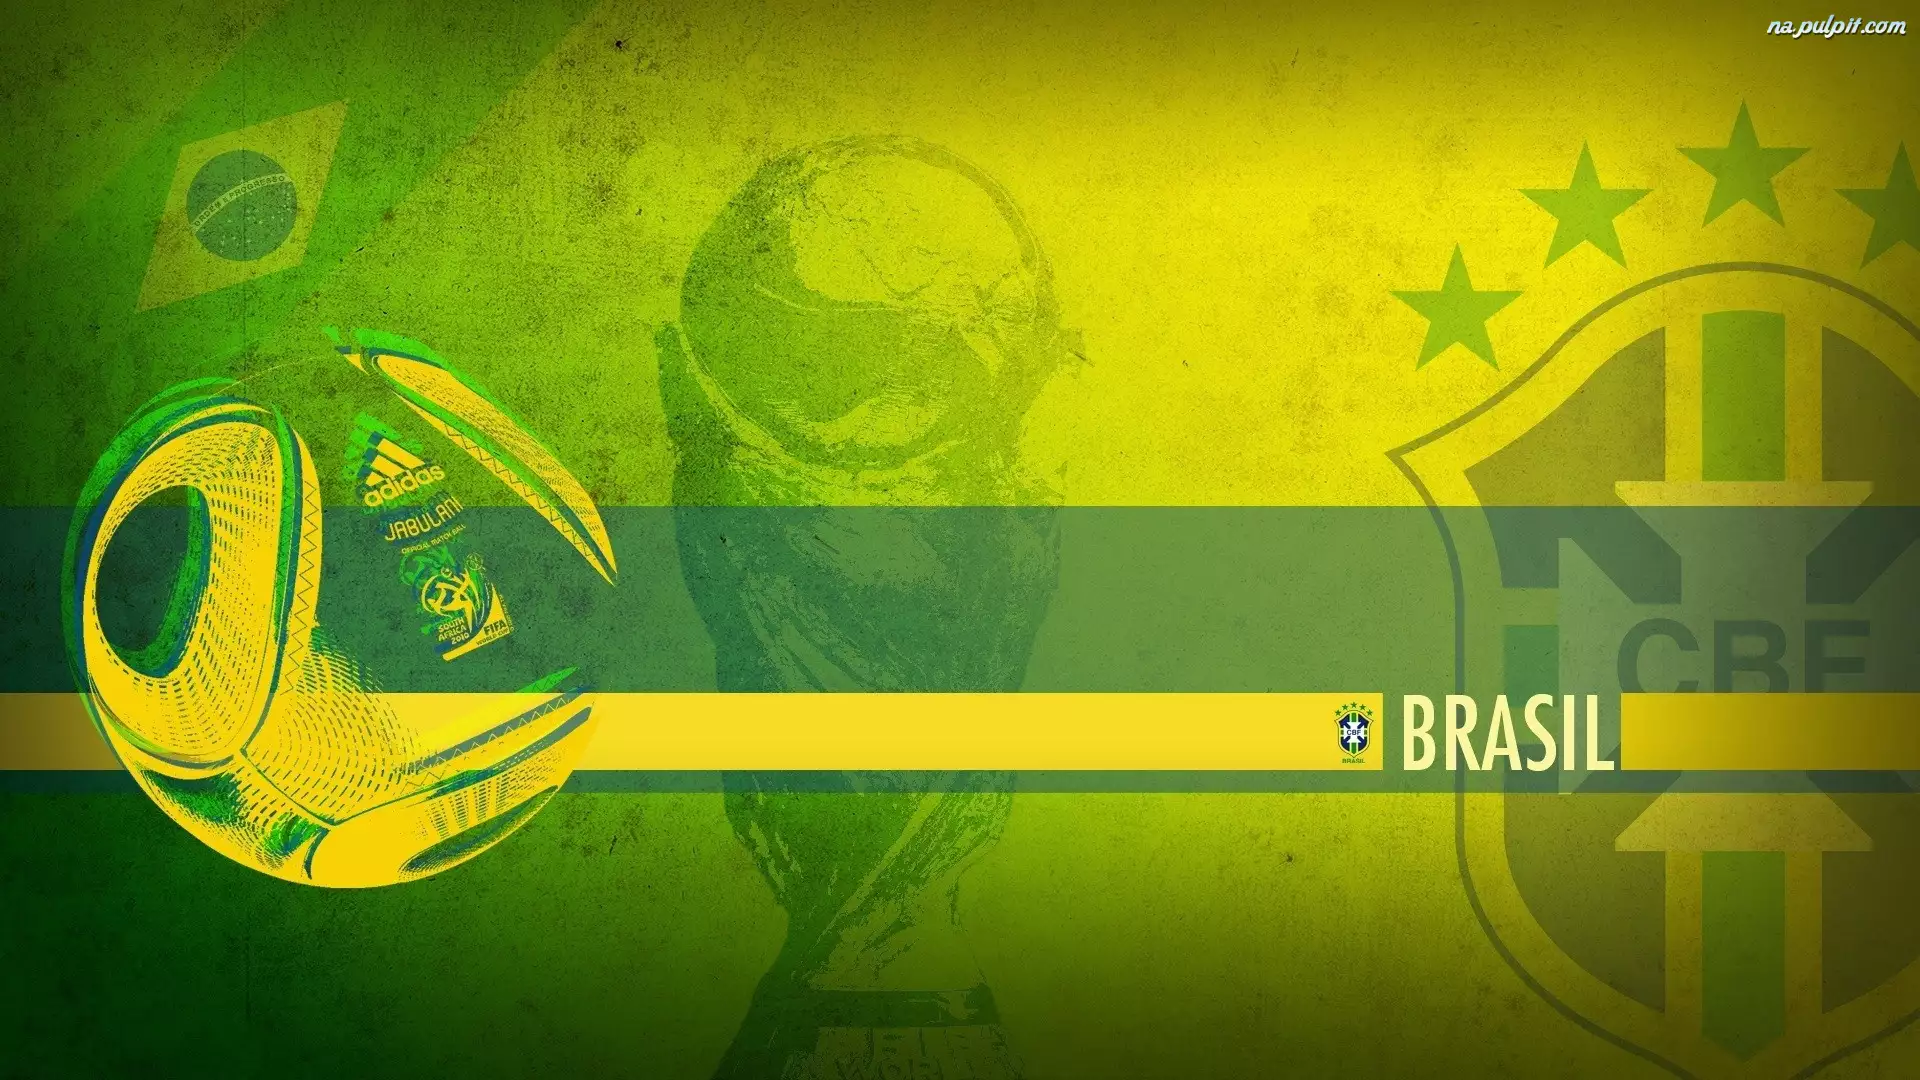 Mistrzostwa Świata 2014, Brasil, Brazylia